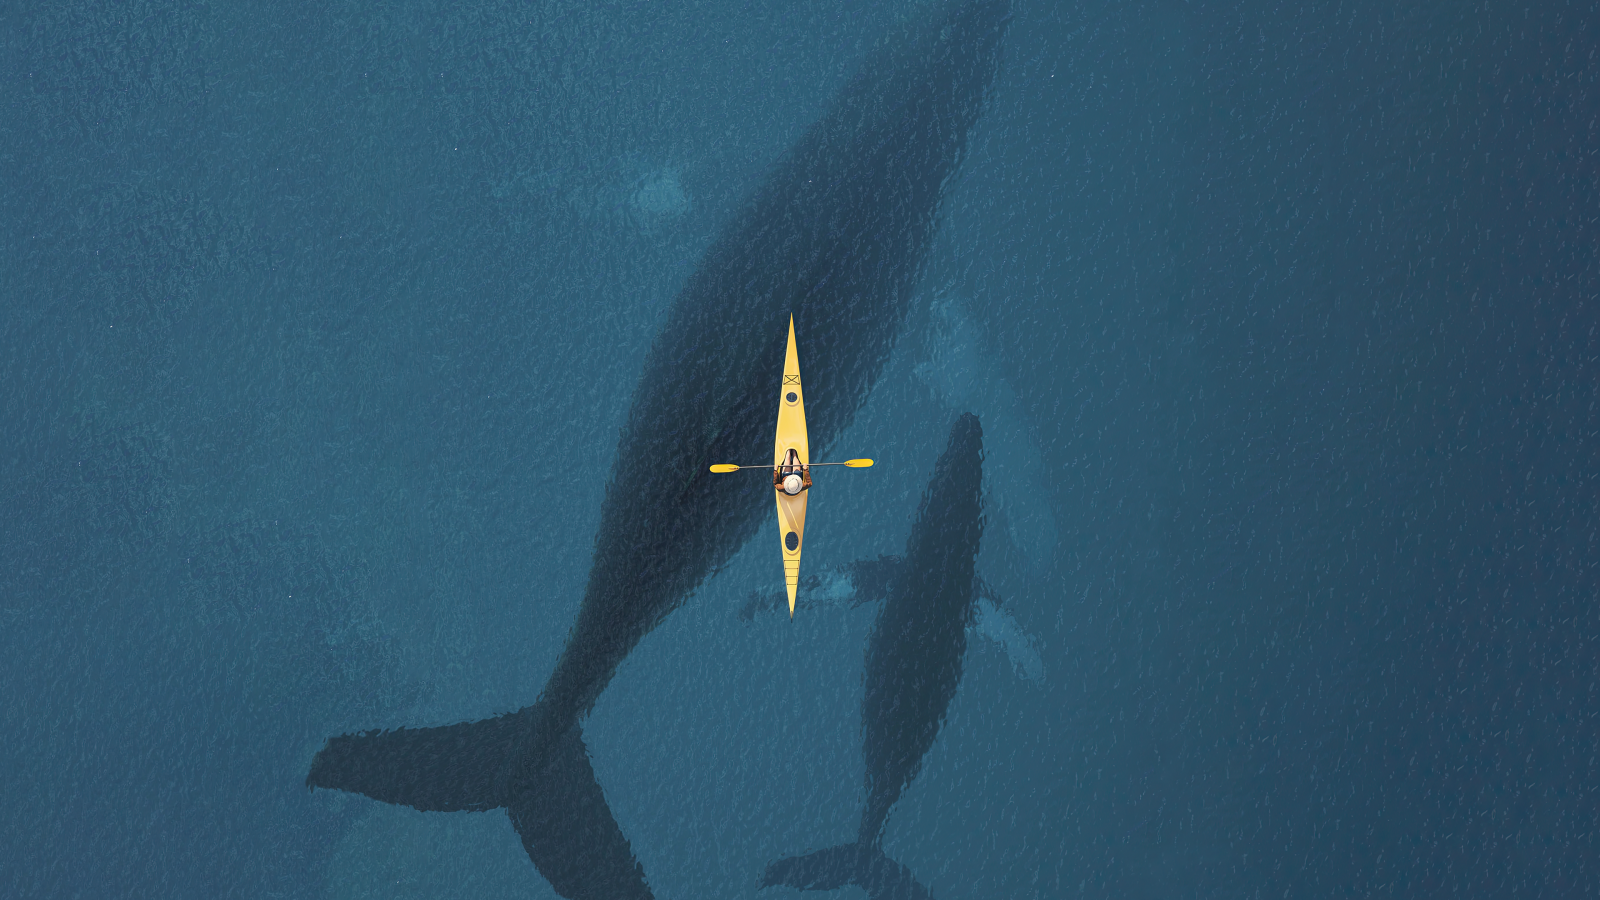 3840×2160 大海中的蓝鲸和小船